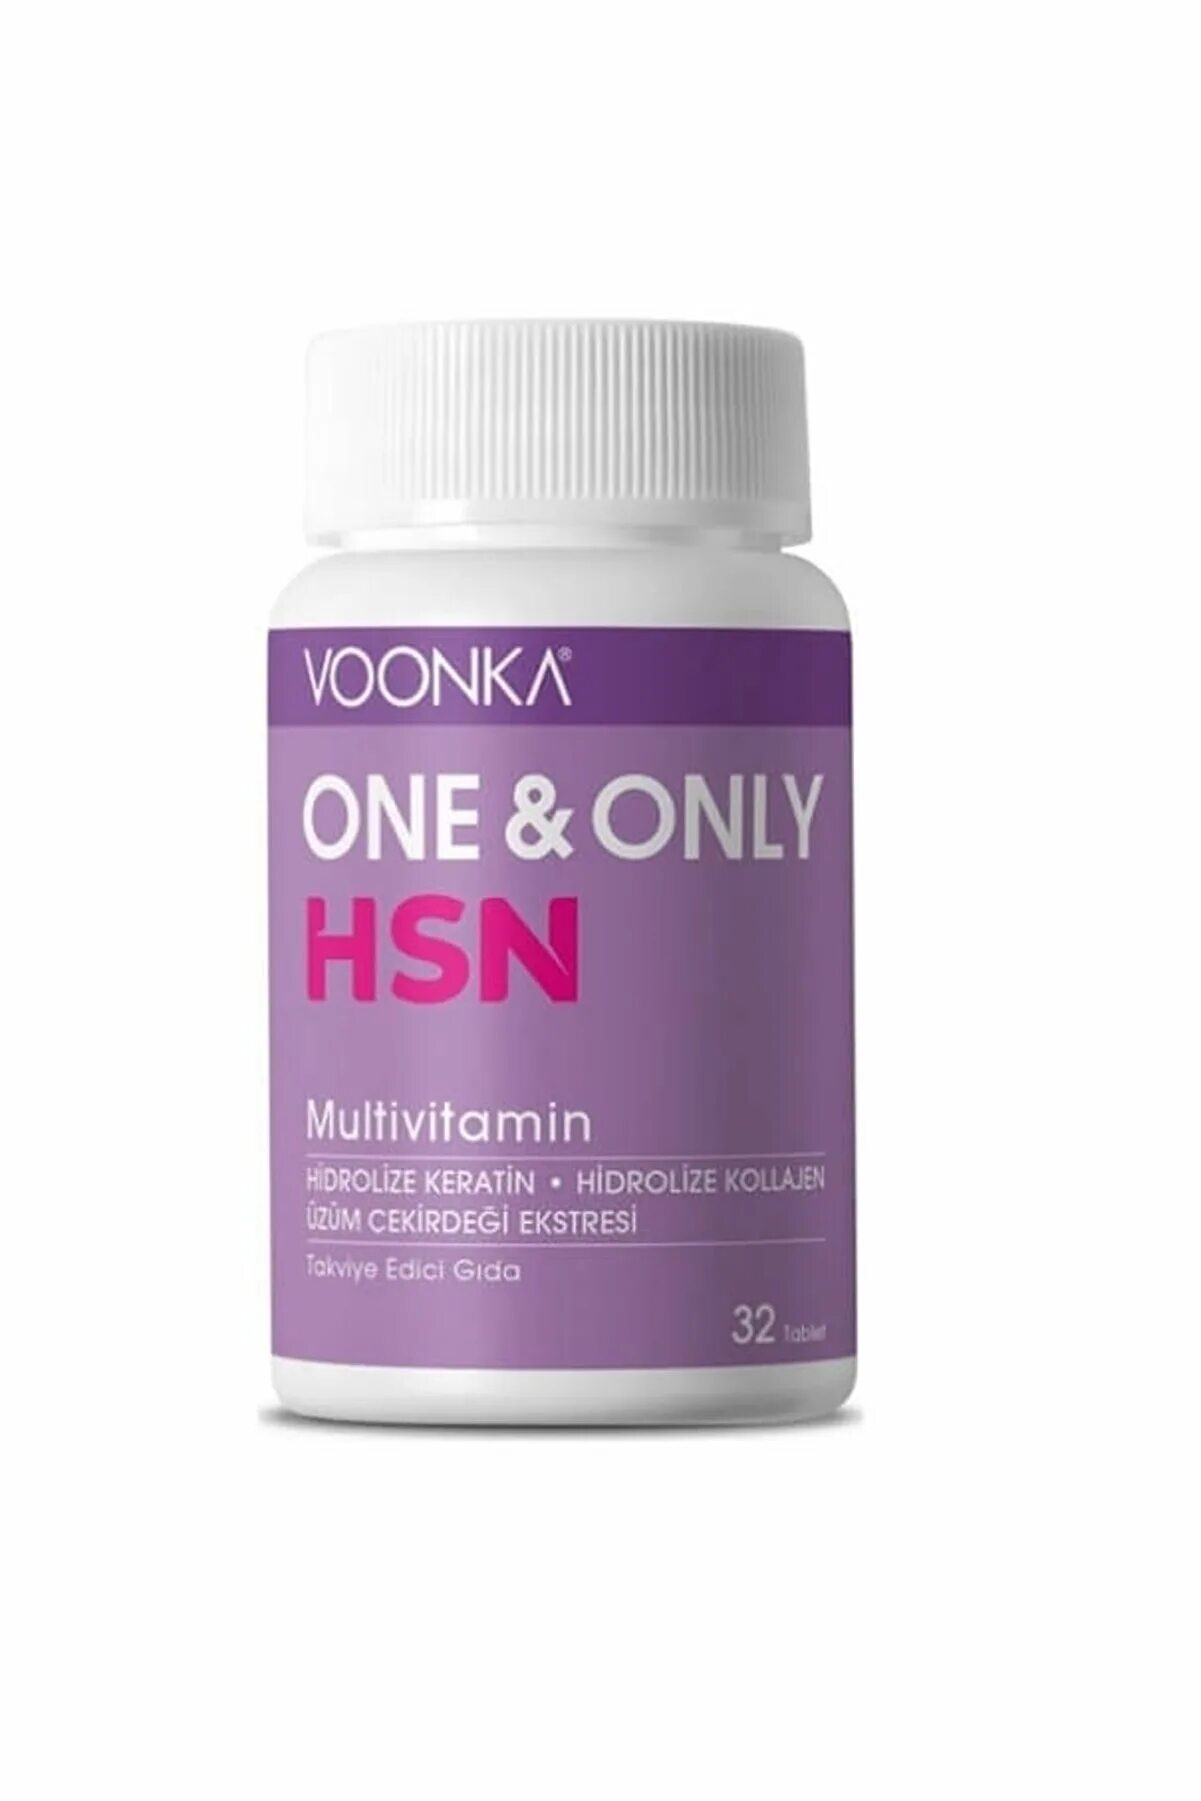 Купить турецкие витамины. Voonka one only HSN Multivitamin. One only HSN витамины Турция. Voonka Multivitamin. Витамины HSN.